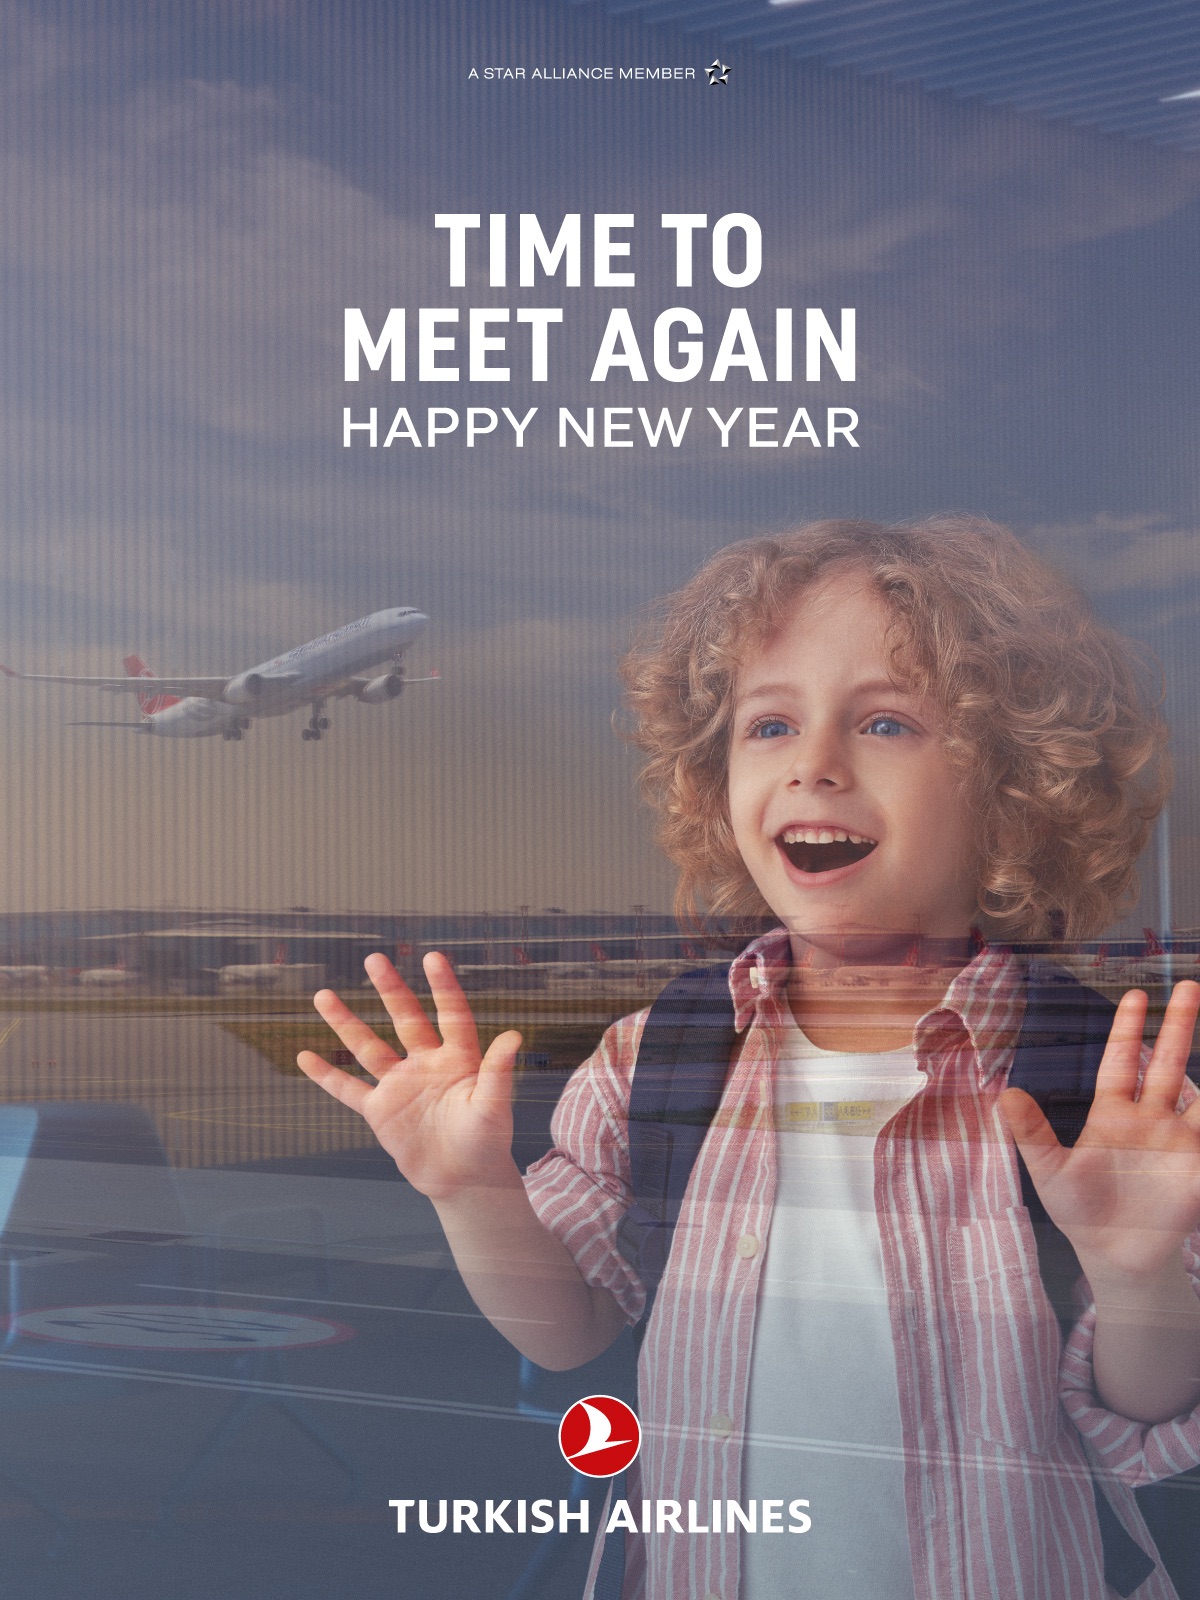 Unser Kompetenzpartner Turkish Airlines wünscht Ihnen ein frohes neues Jahr!